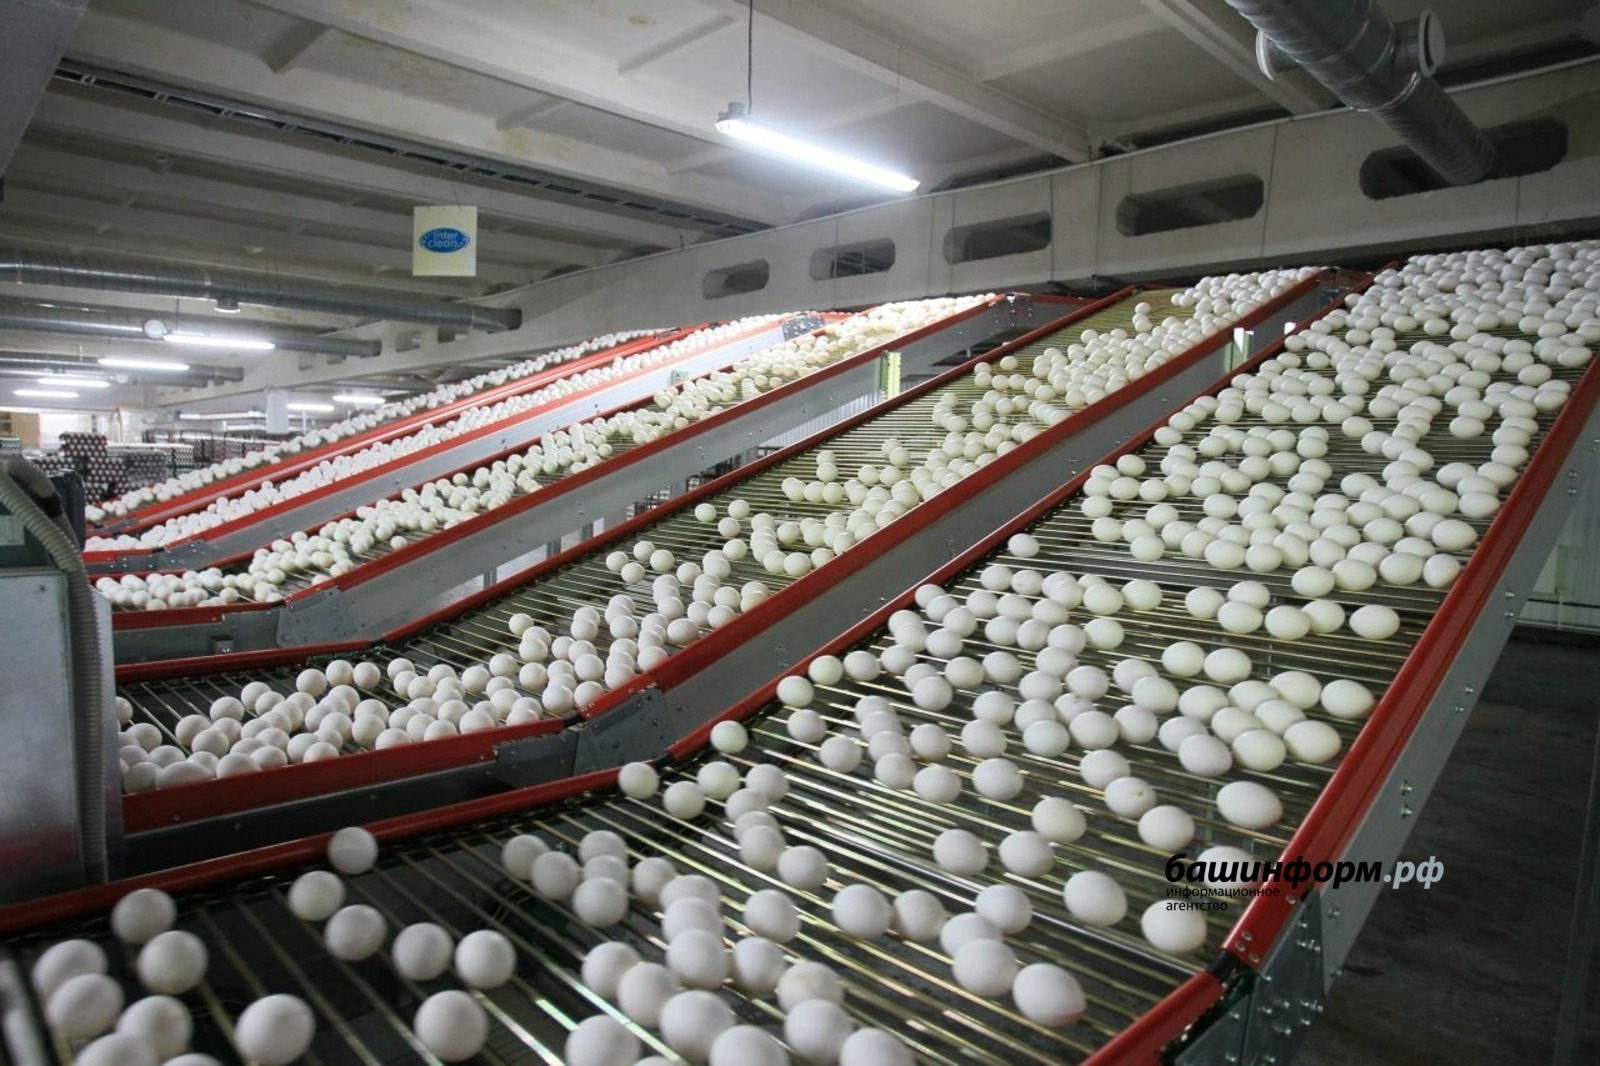 В Башкирии проверят обоснованность цен на яйца